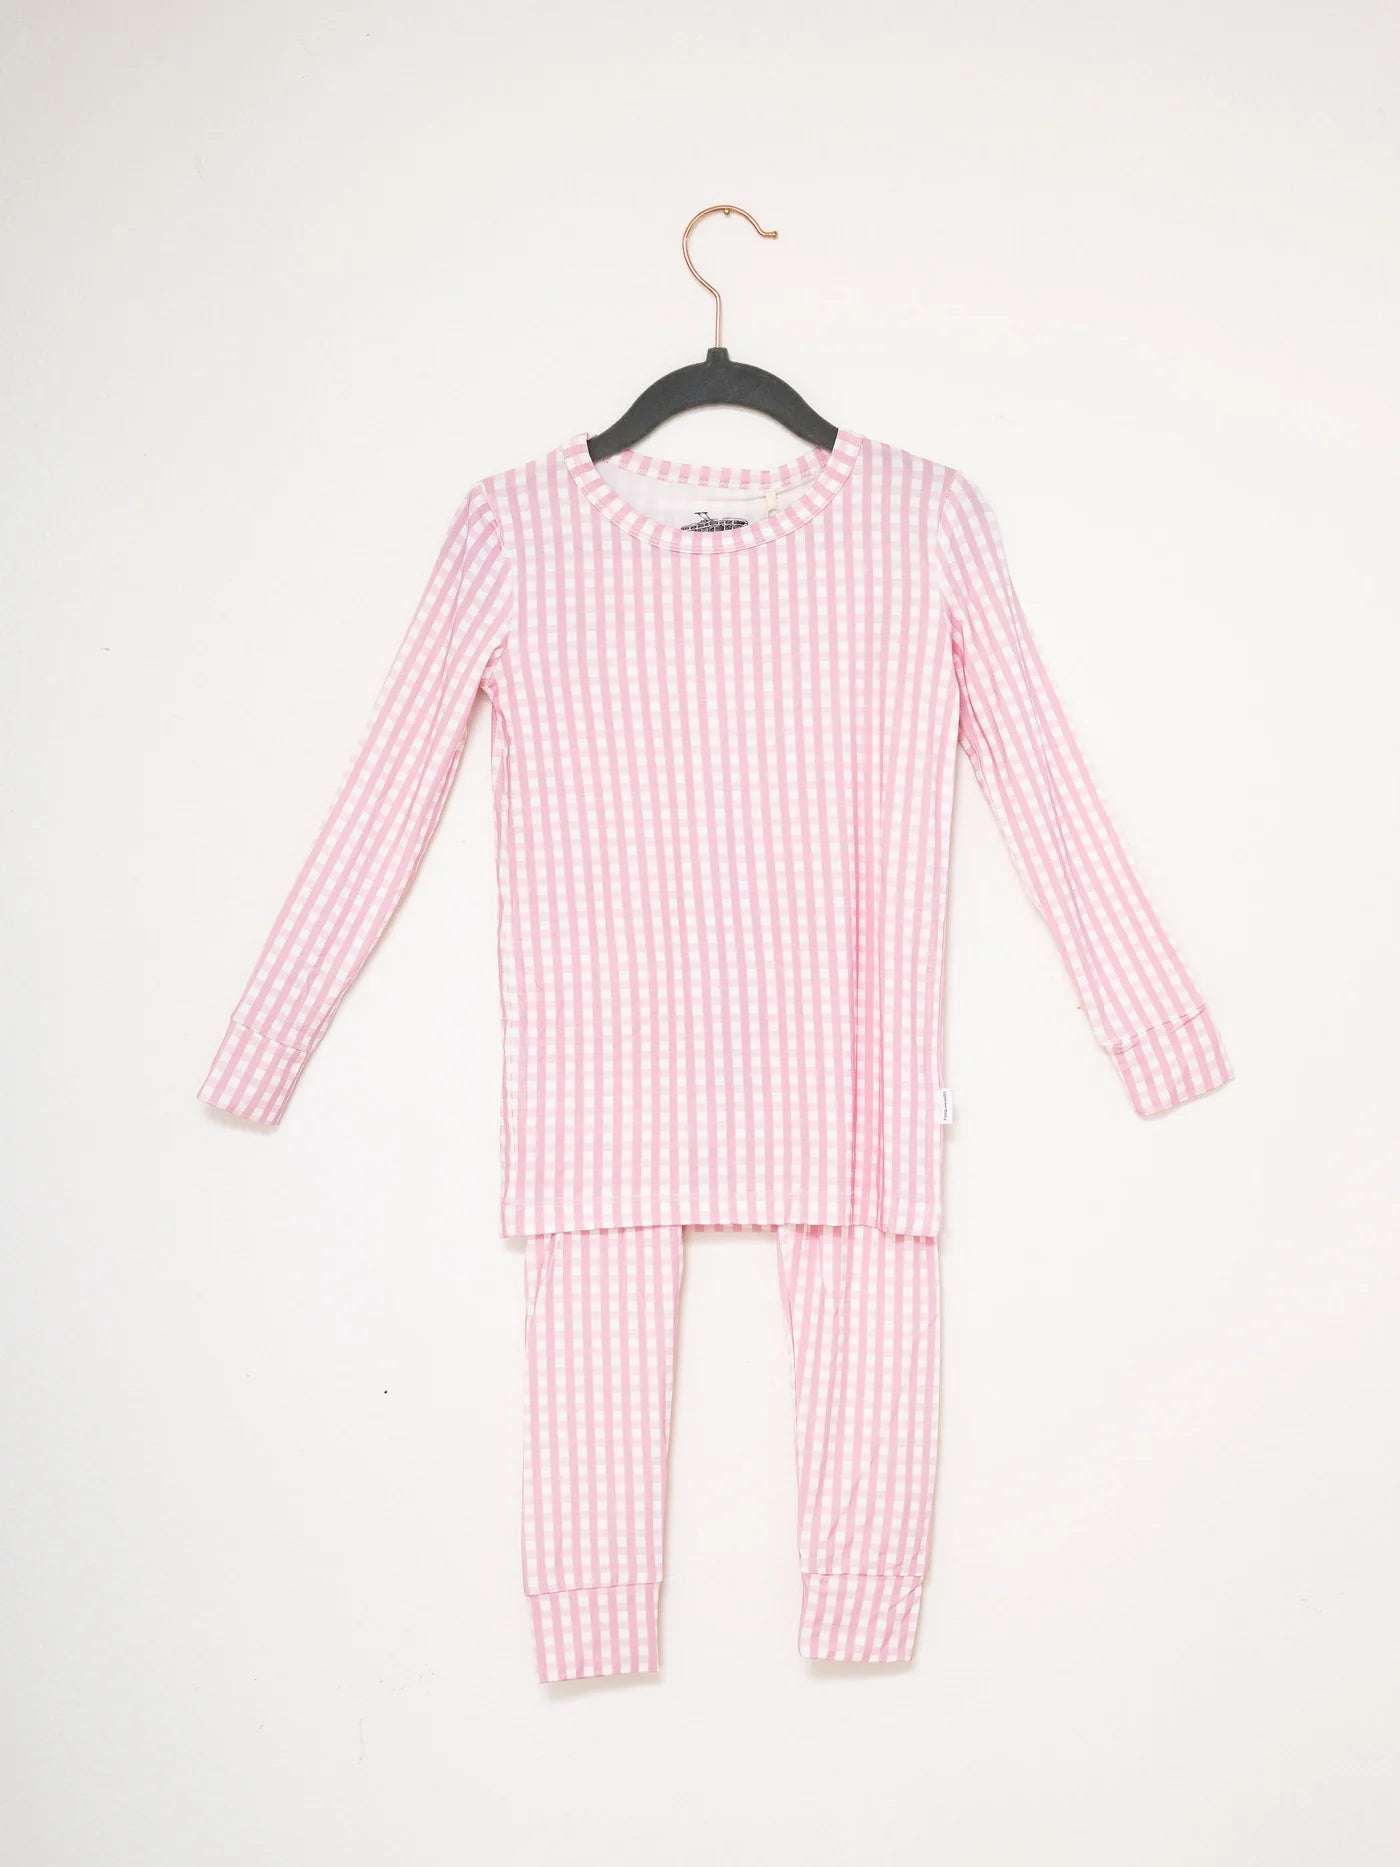 The Uptown Baby 2 Piece Pajama Set